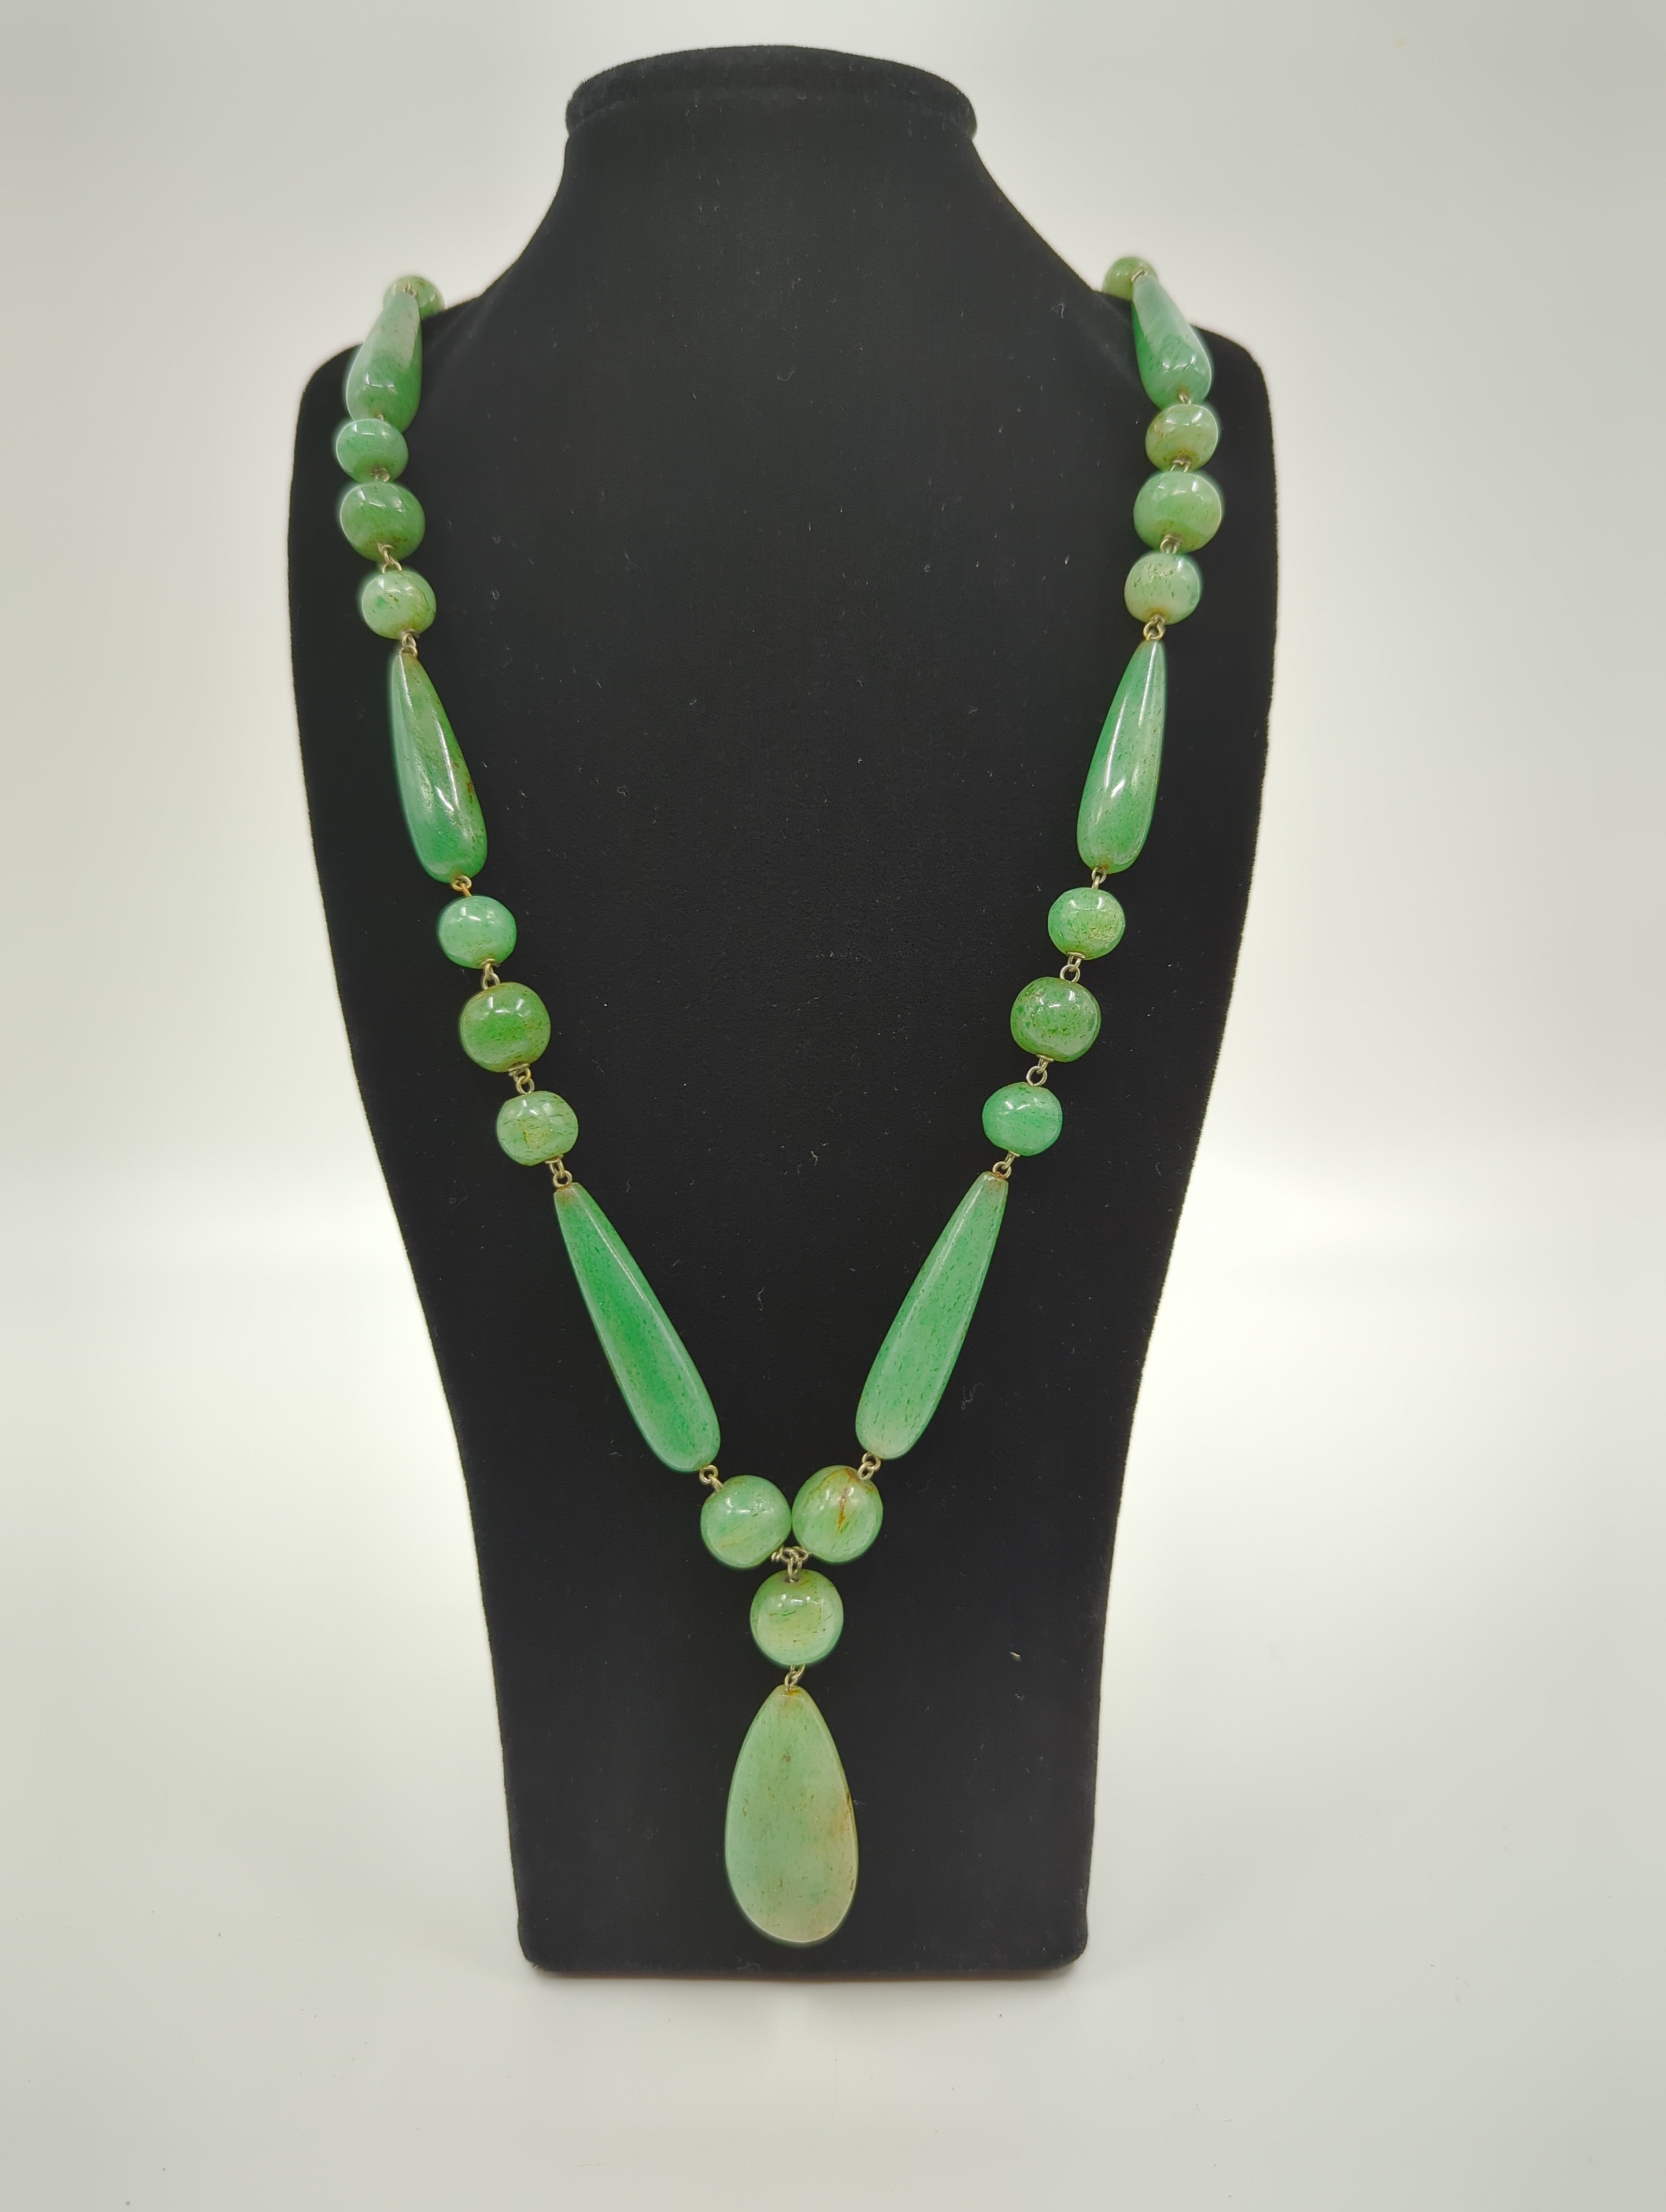 Ce collier de perles et de pendentifs en jade néphrite vert sculpté de la fin du 19e siècle, d'une longueur totale de 32 pouces, est un accessoire polyvalent et sophistiqué. Les perles sont enfilées sur des fils d'argent à la fois délicats et